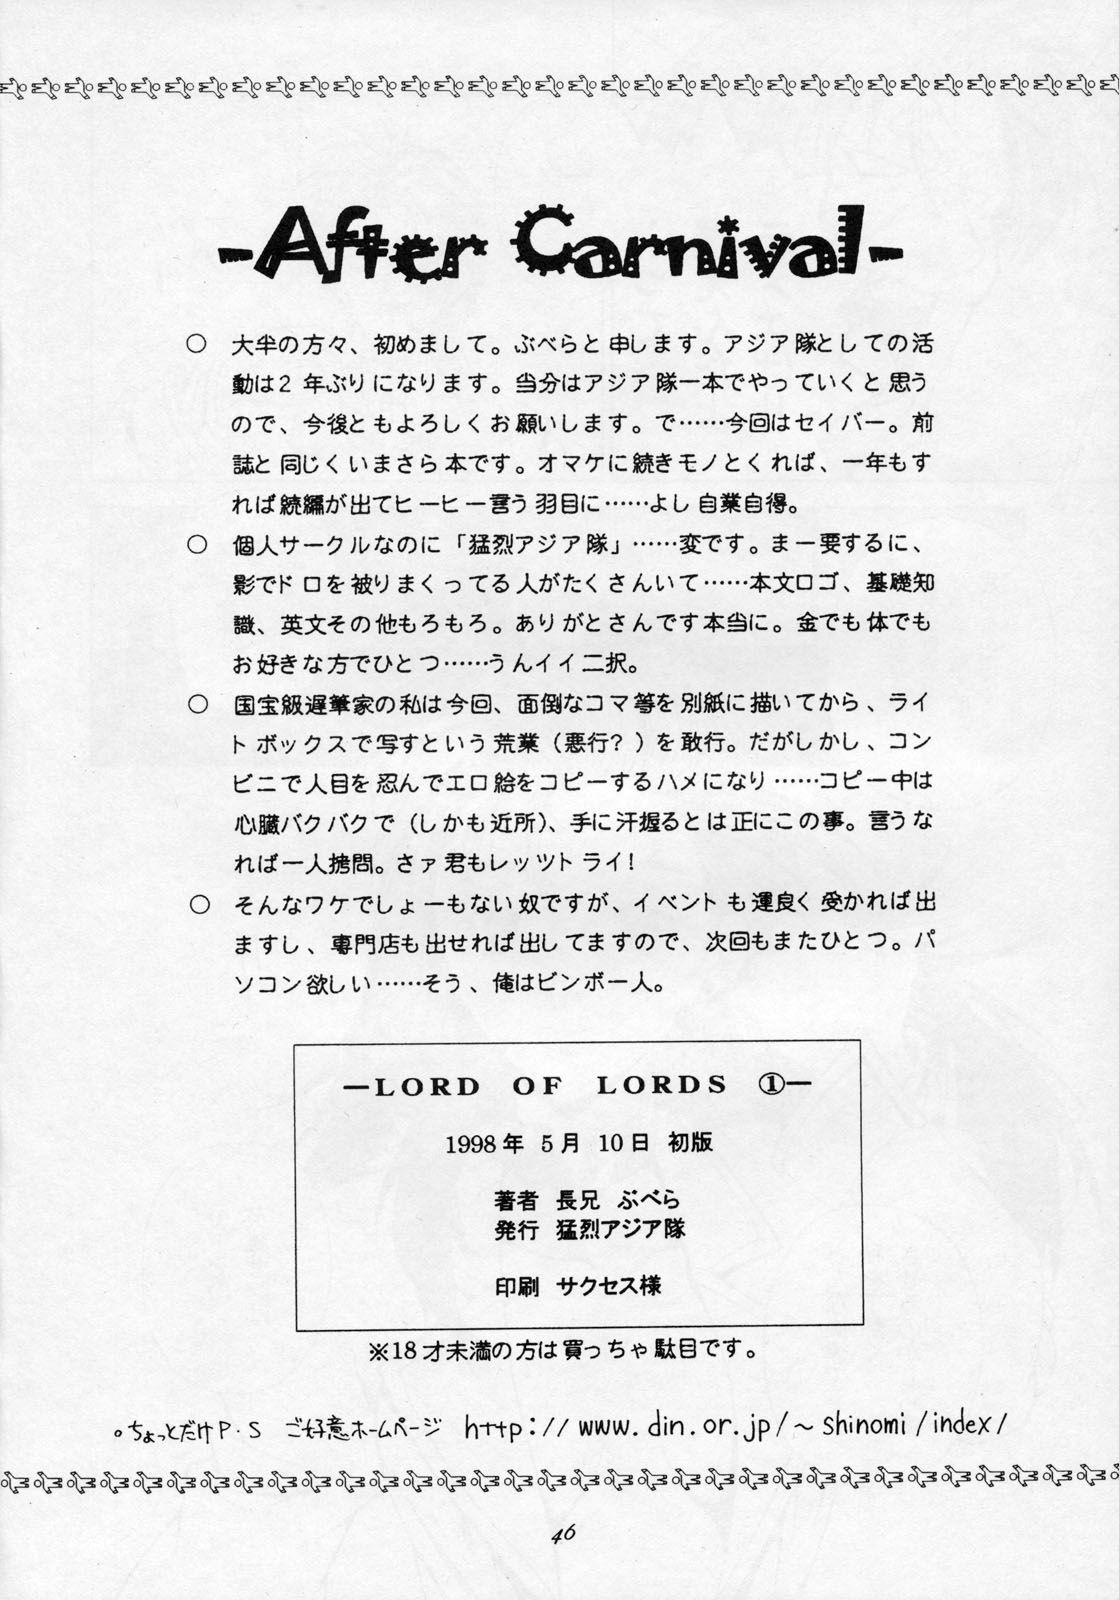 【暴力アジアチーム】LORDOF LORDS vol.1